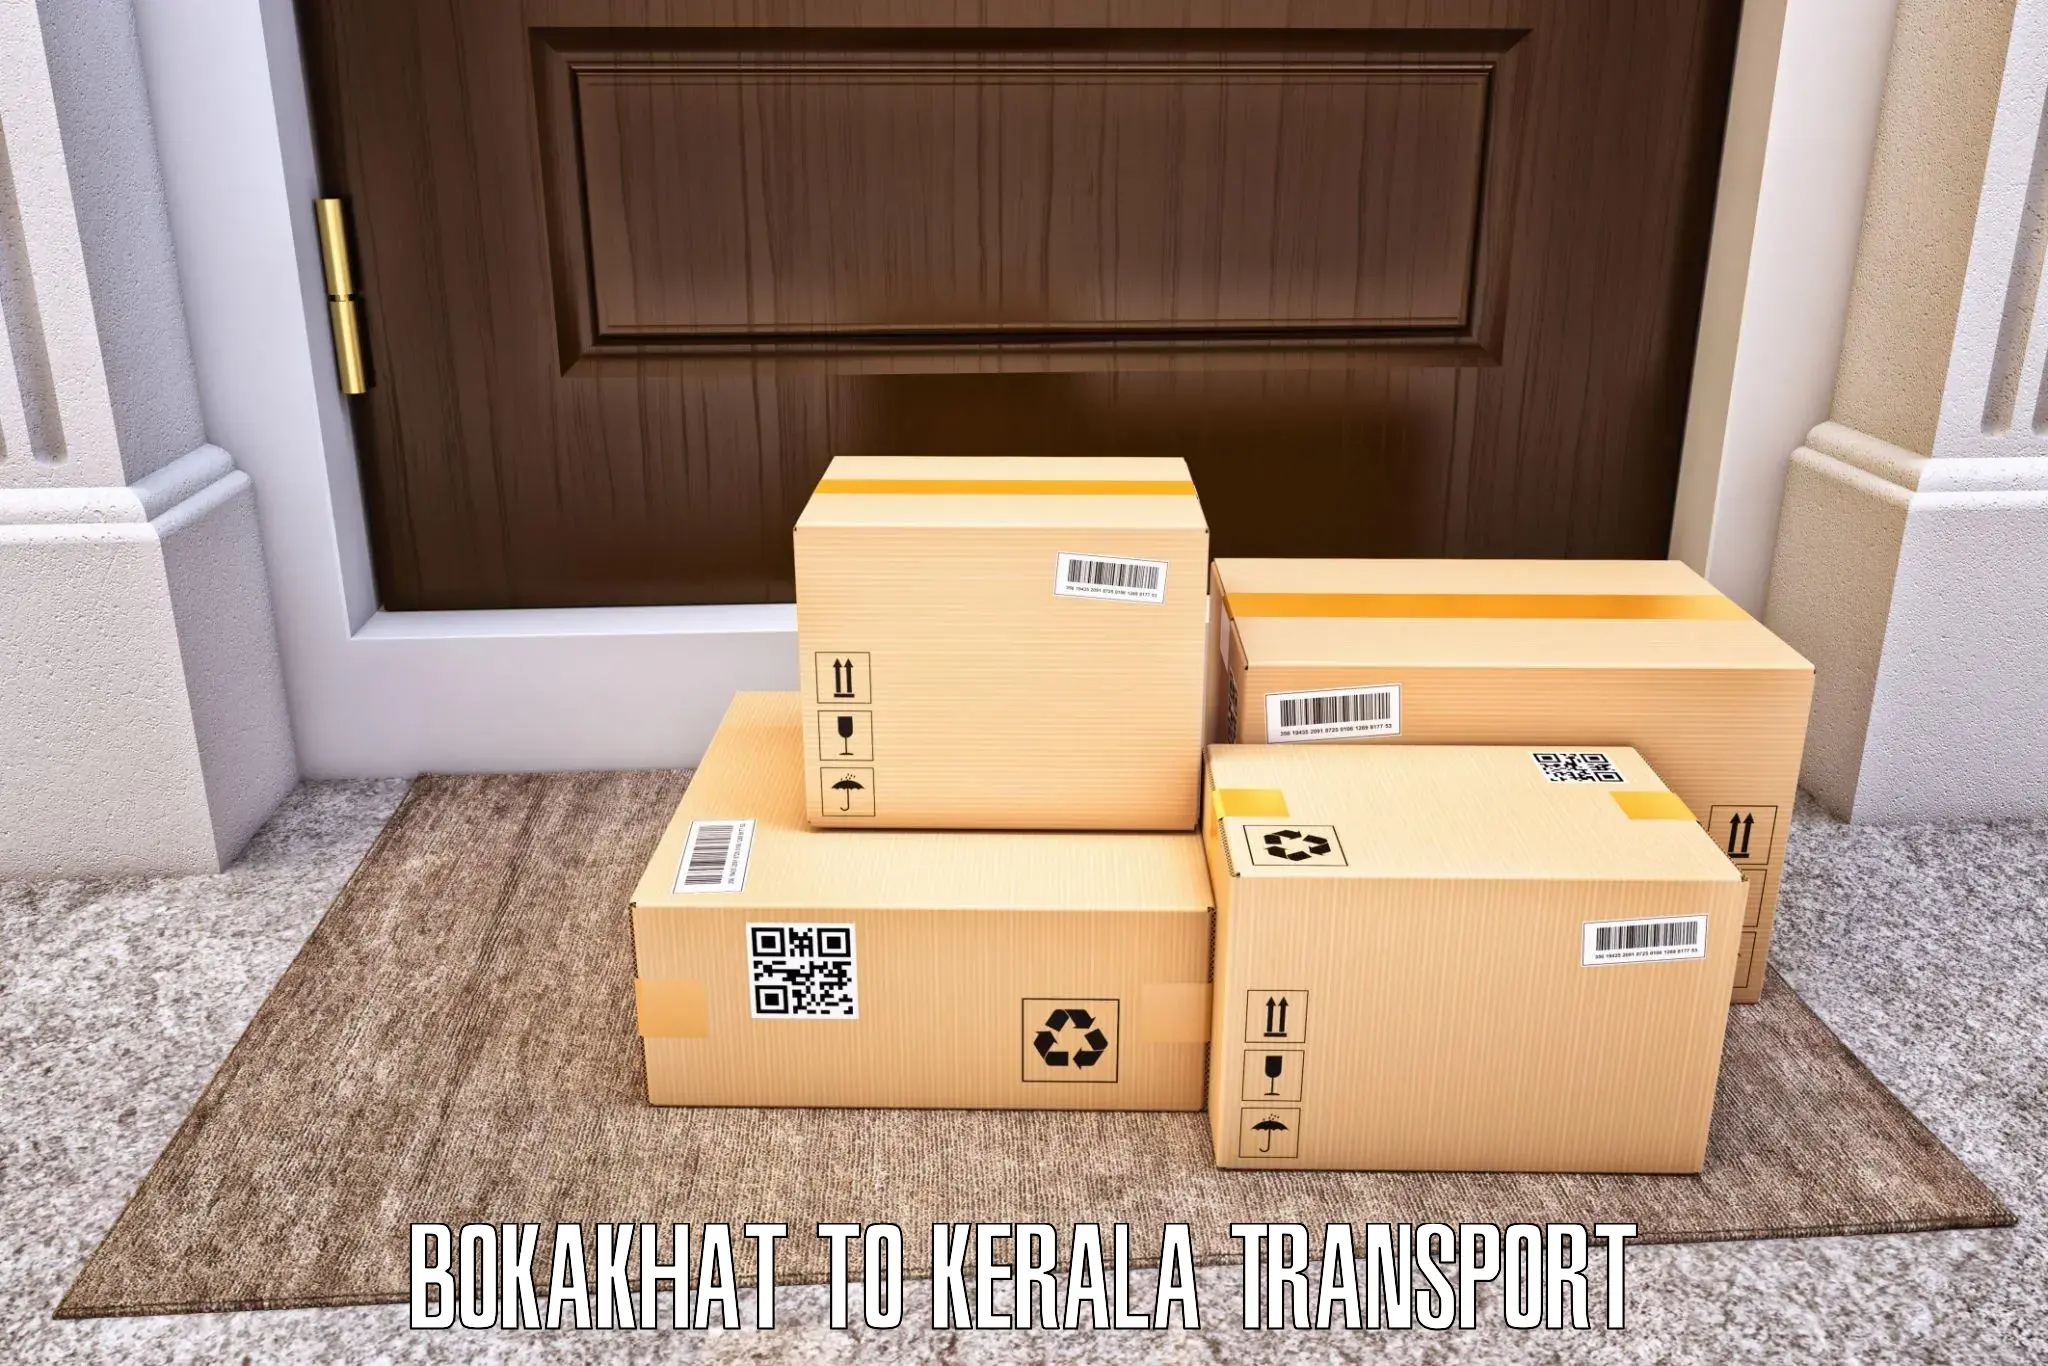 India truck logistics services Bokakhat to Nileshwar